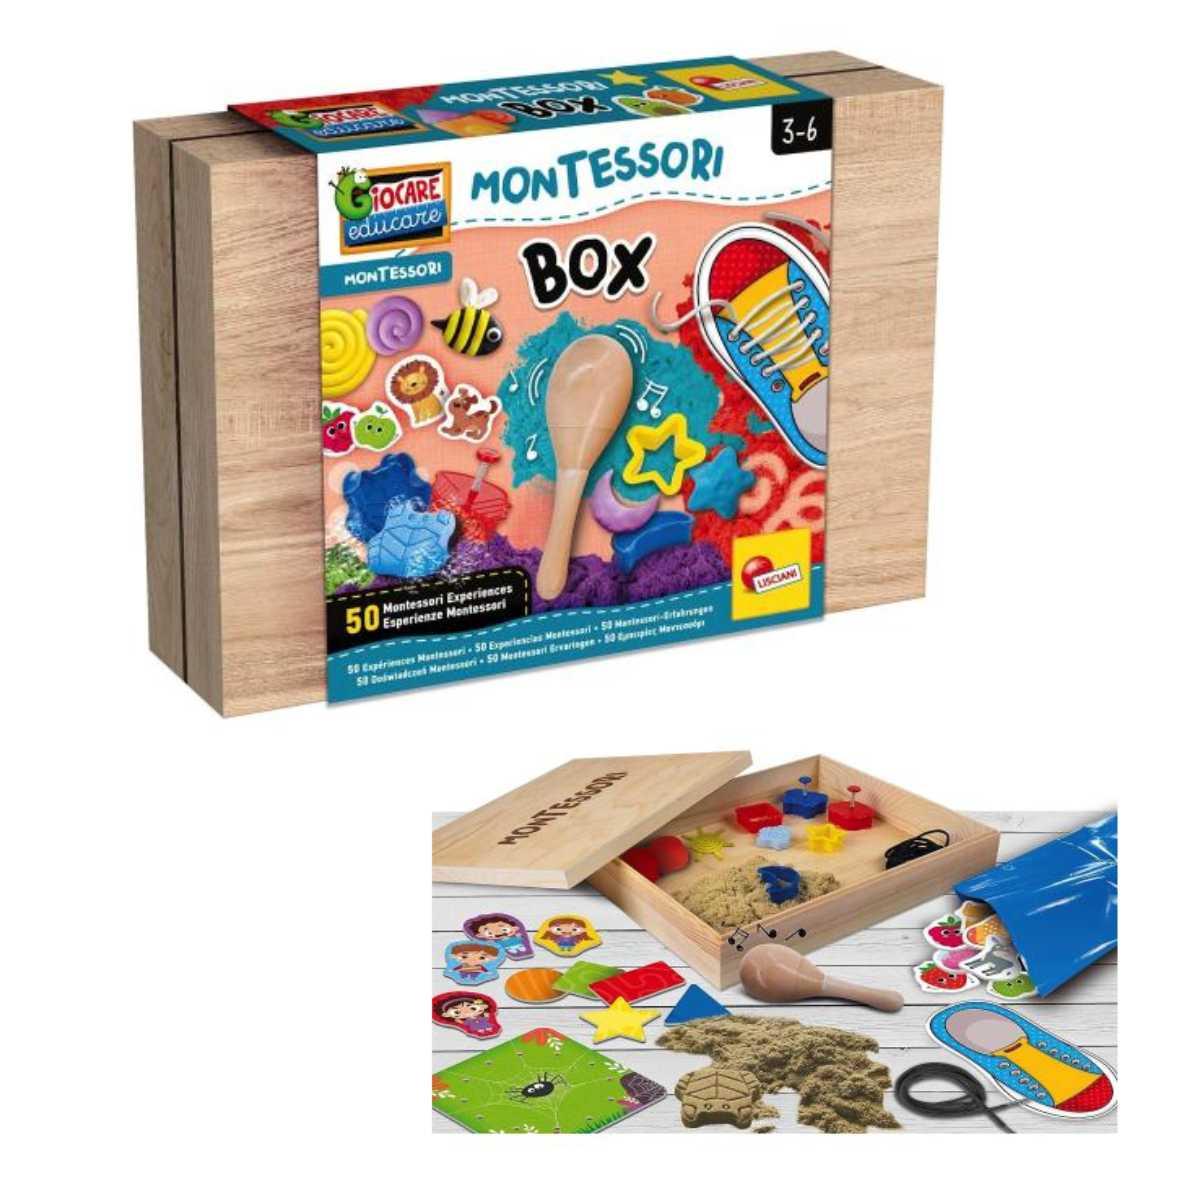 Montessori work box